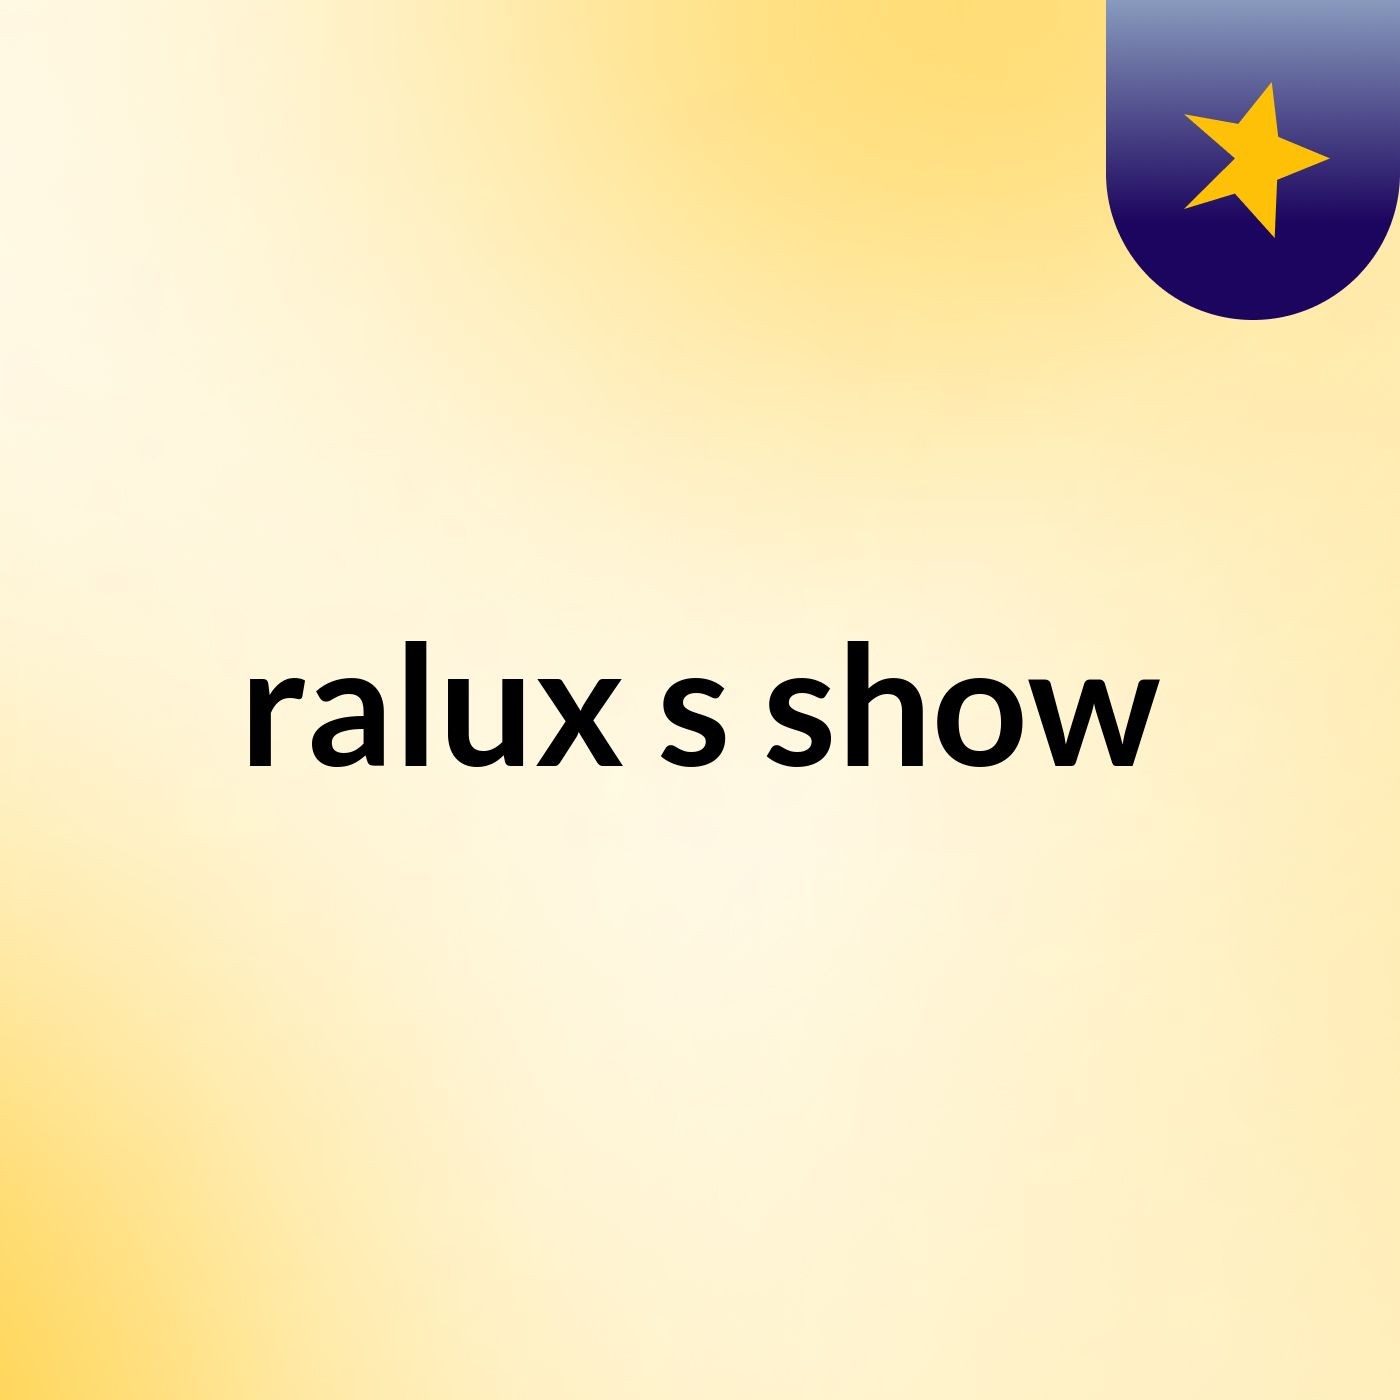 ralux's show